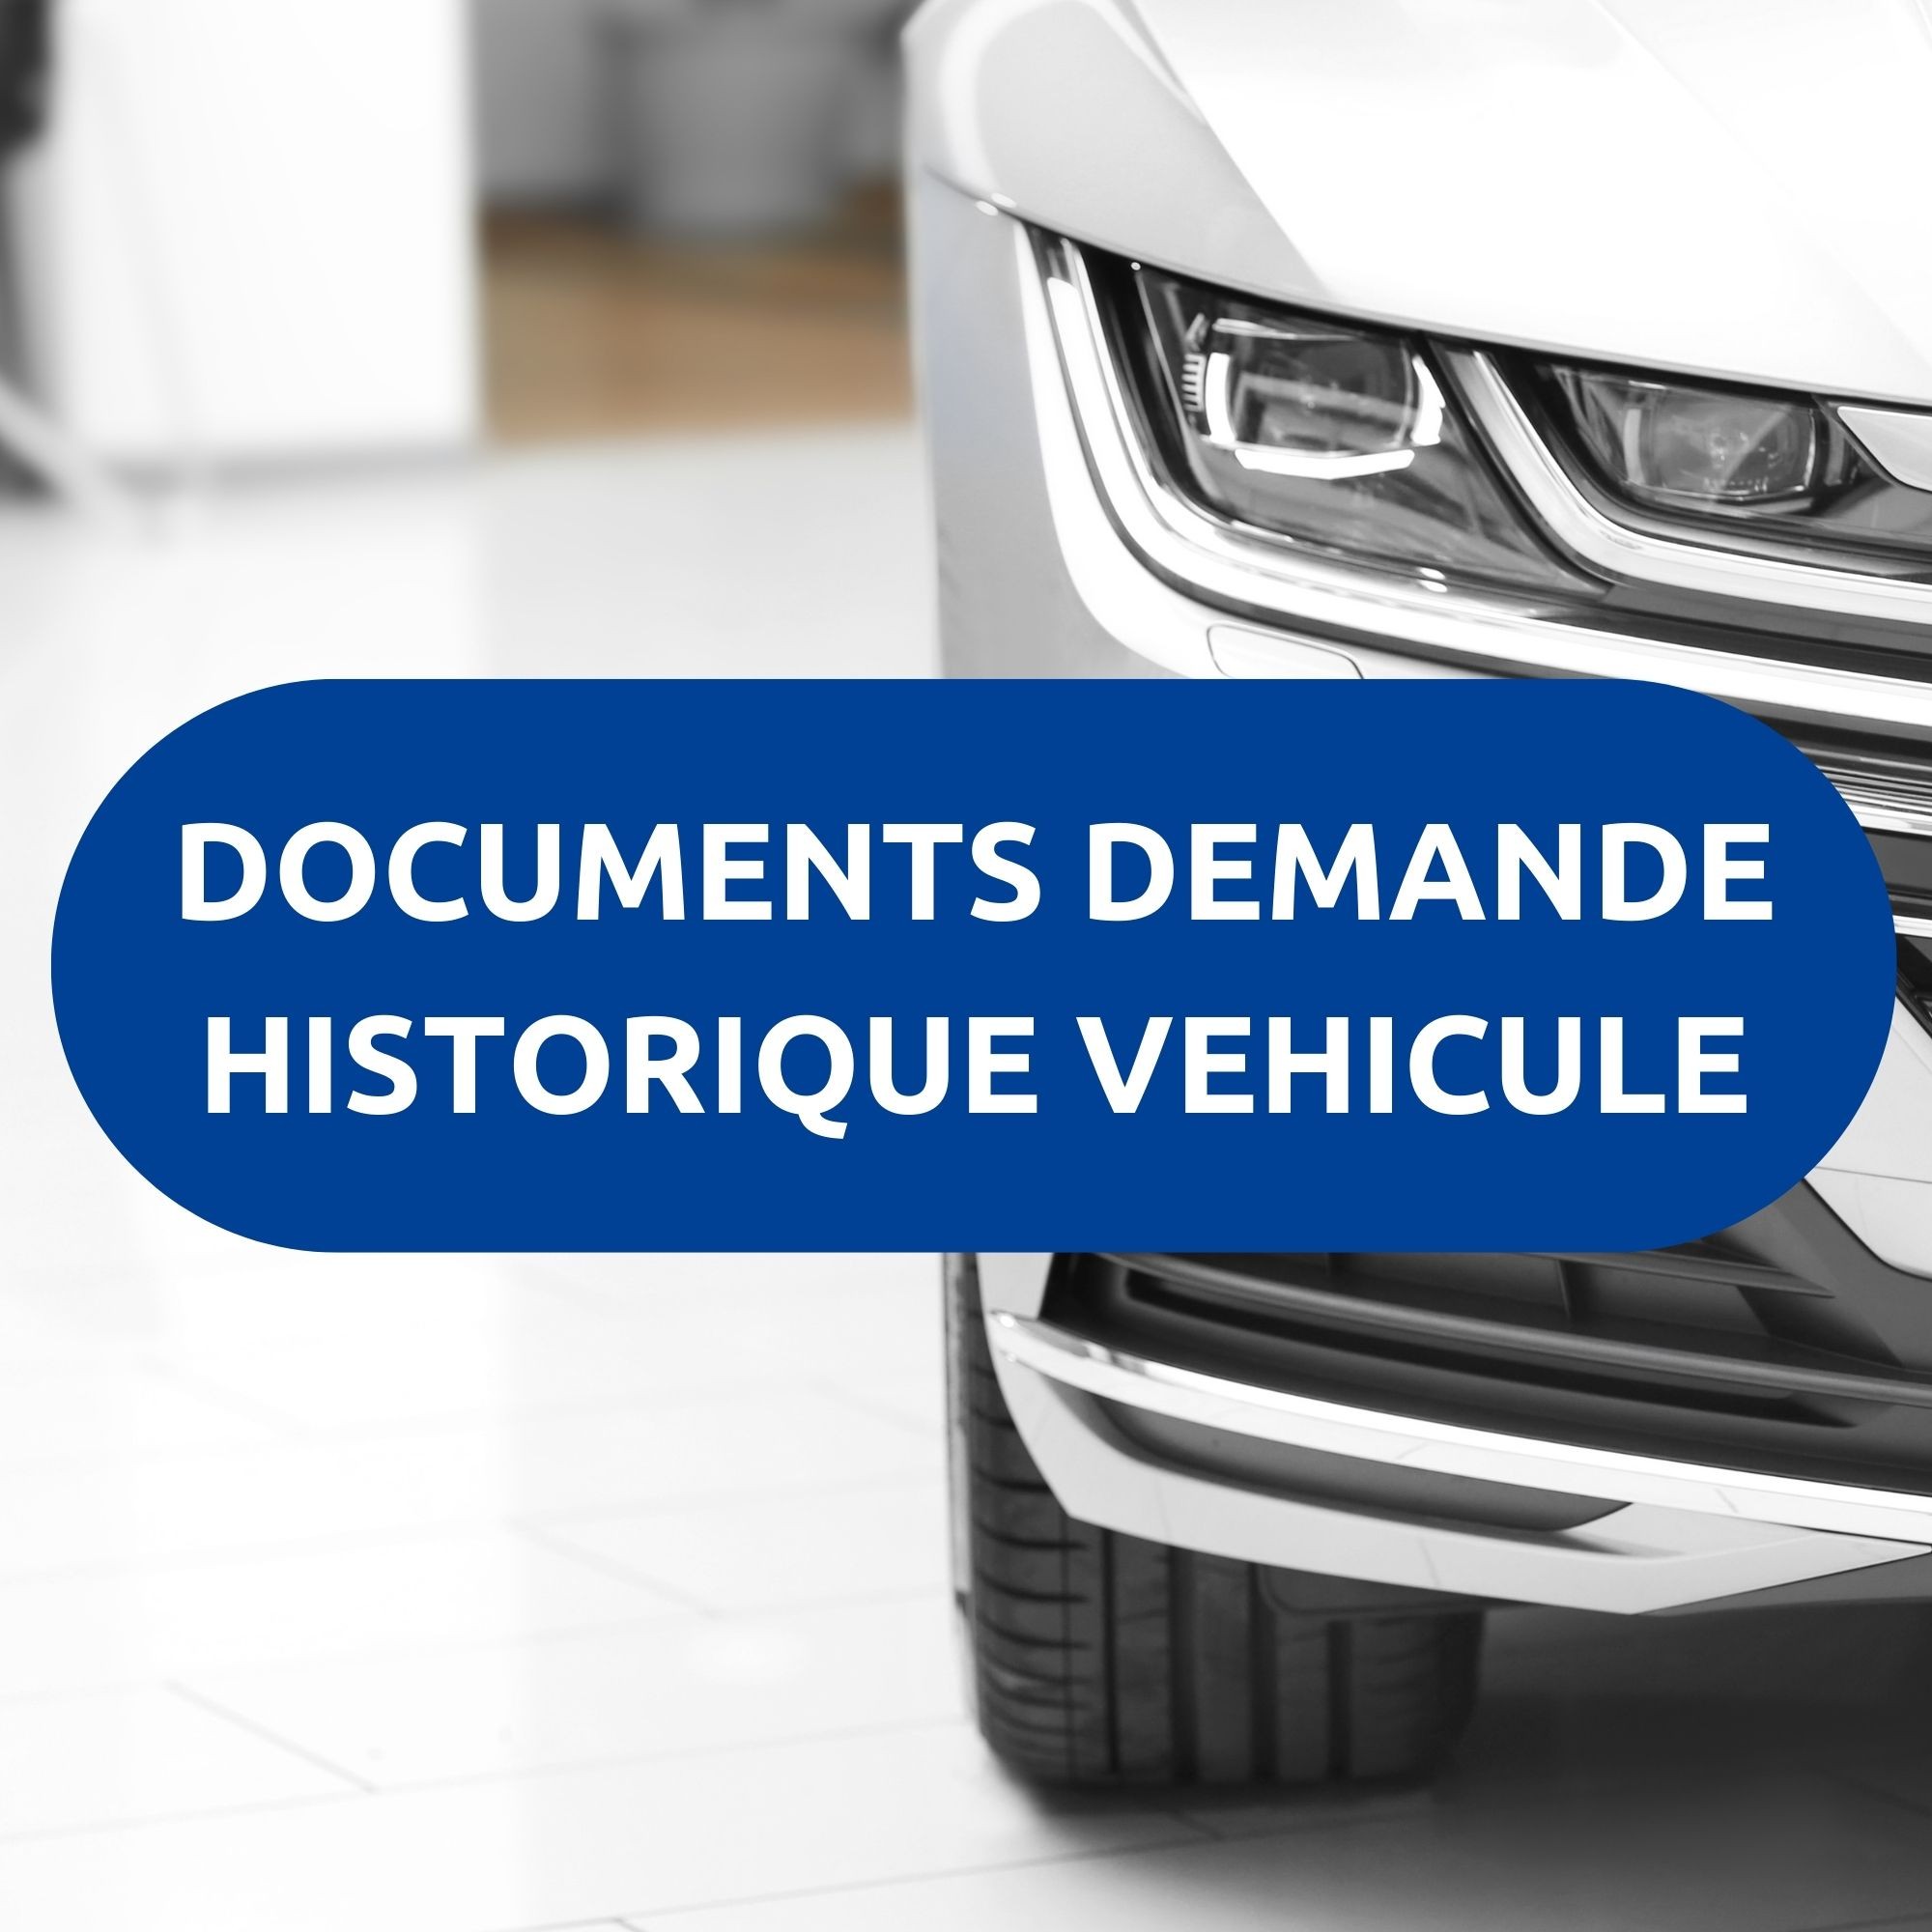 Documents demande historique de véhicule